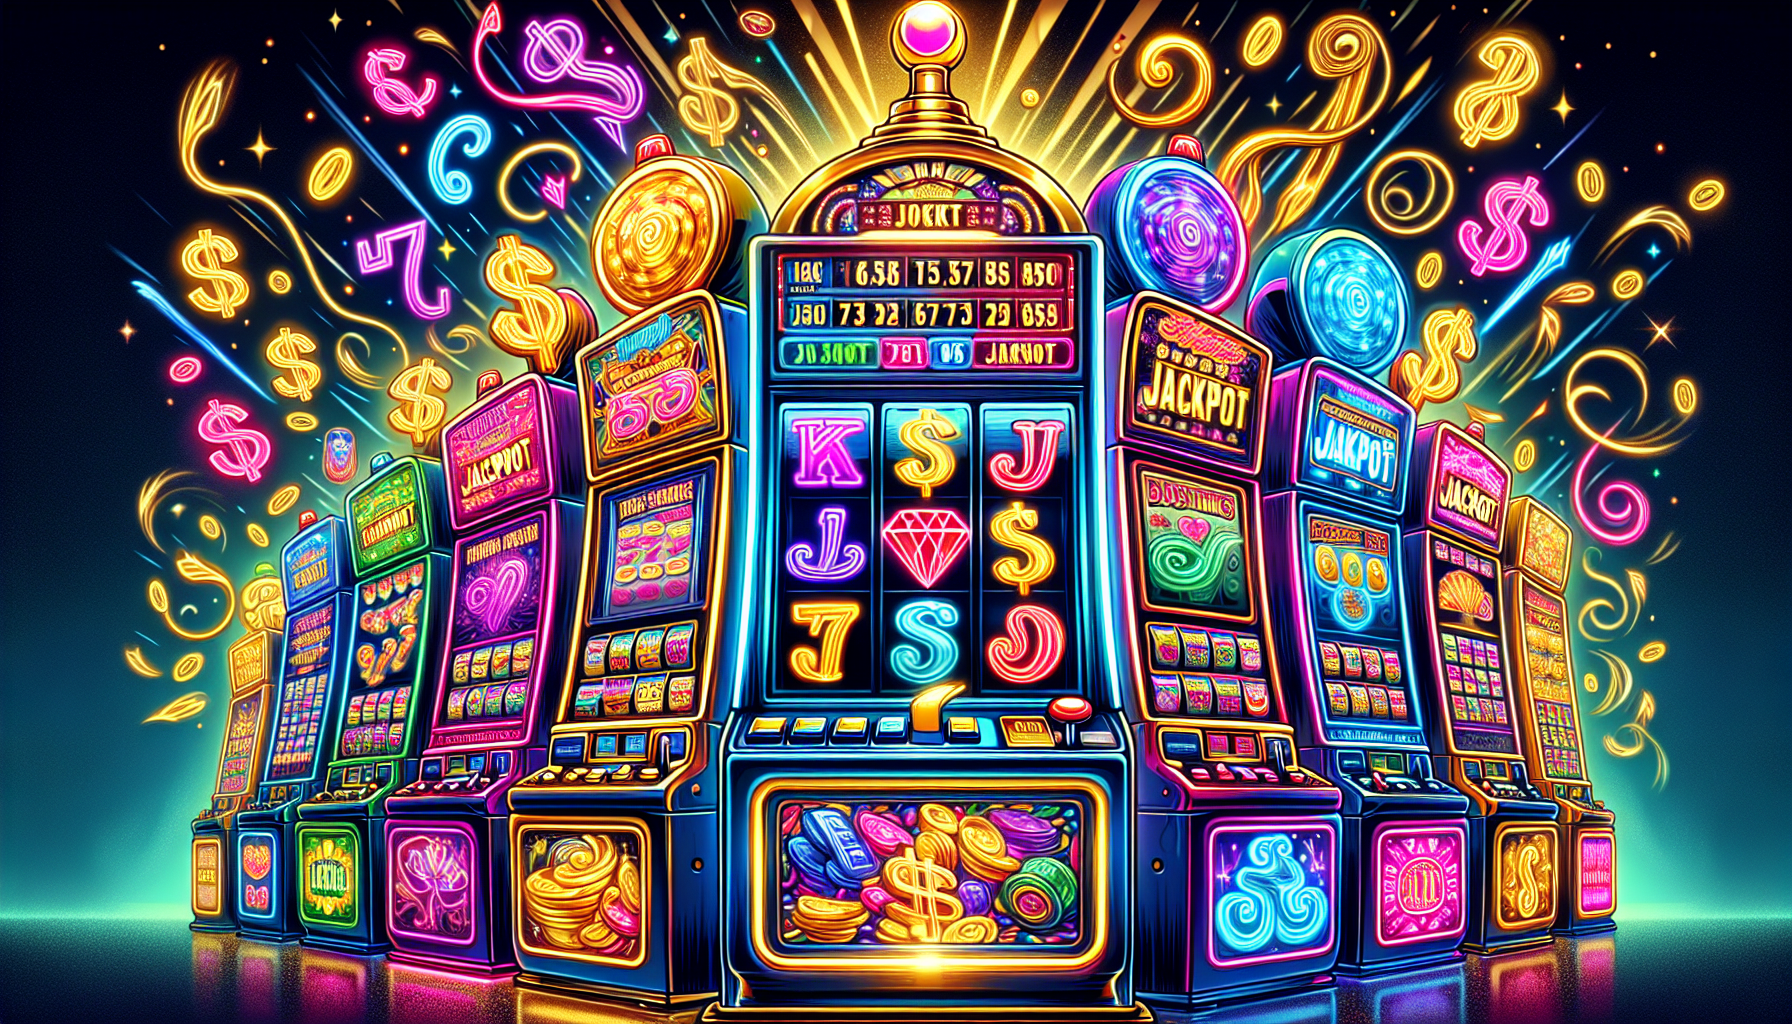 Illustration de machines à sous colorées avec des jackpots